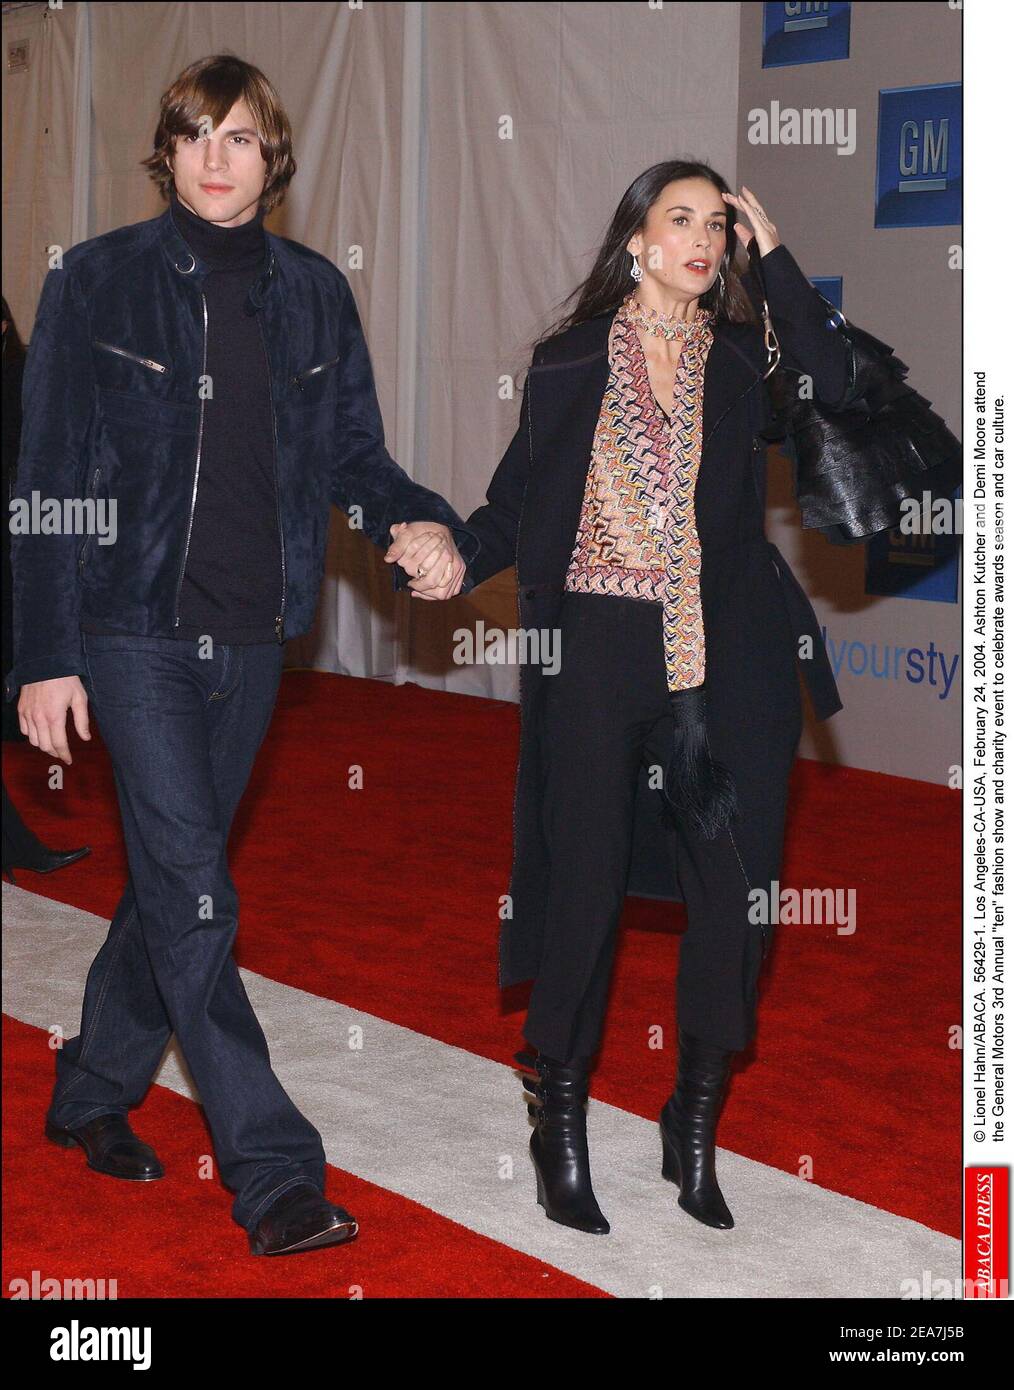 © Lionel Hahn/ABACA. 56429-1. Los Angeles-CA-USA, 24 février 2004. Ashton Kutcher et demi Moore participent au 3e défilé annuel de mode et à l'événement caritatif de General Motors pour célébrer la saison des prix et la culture automobile. Banque D'Images